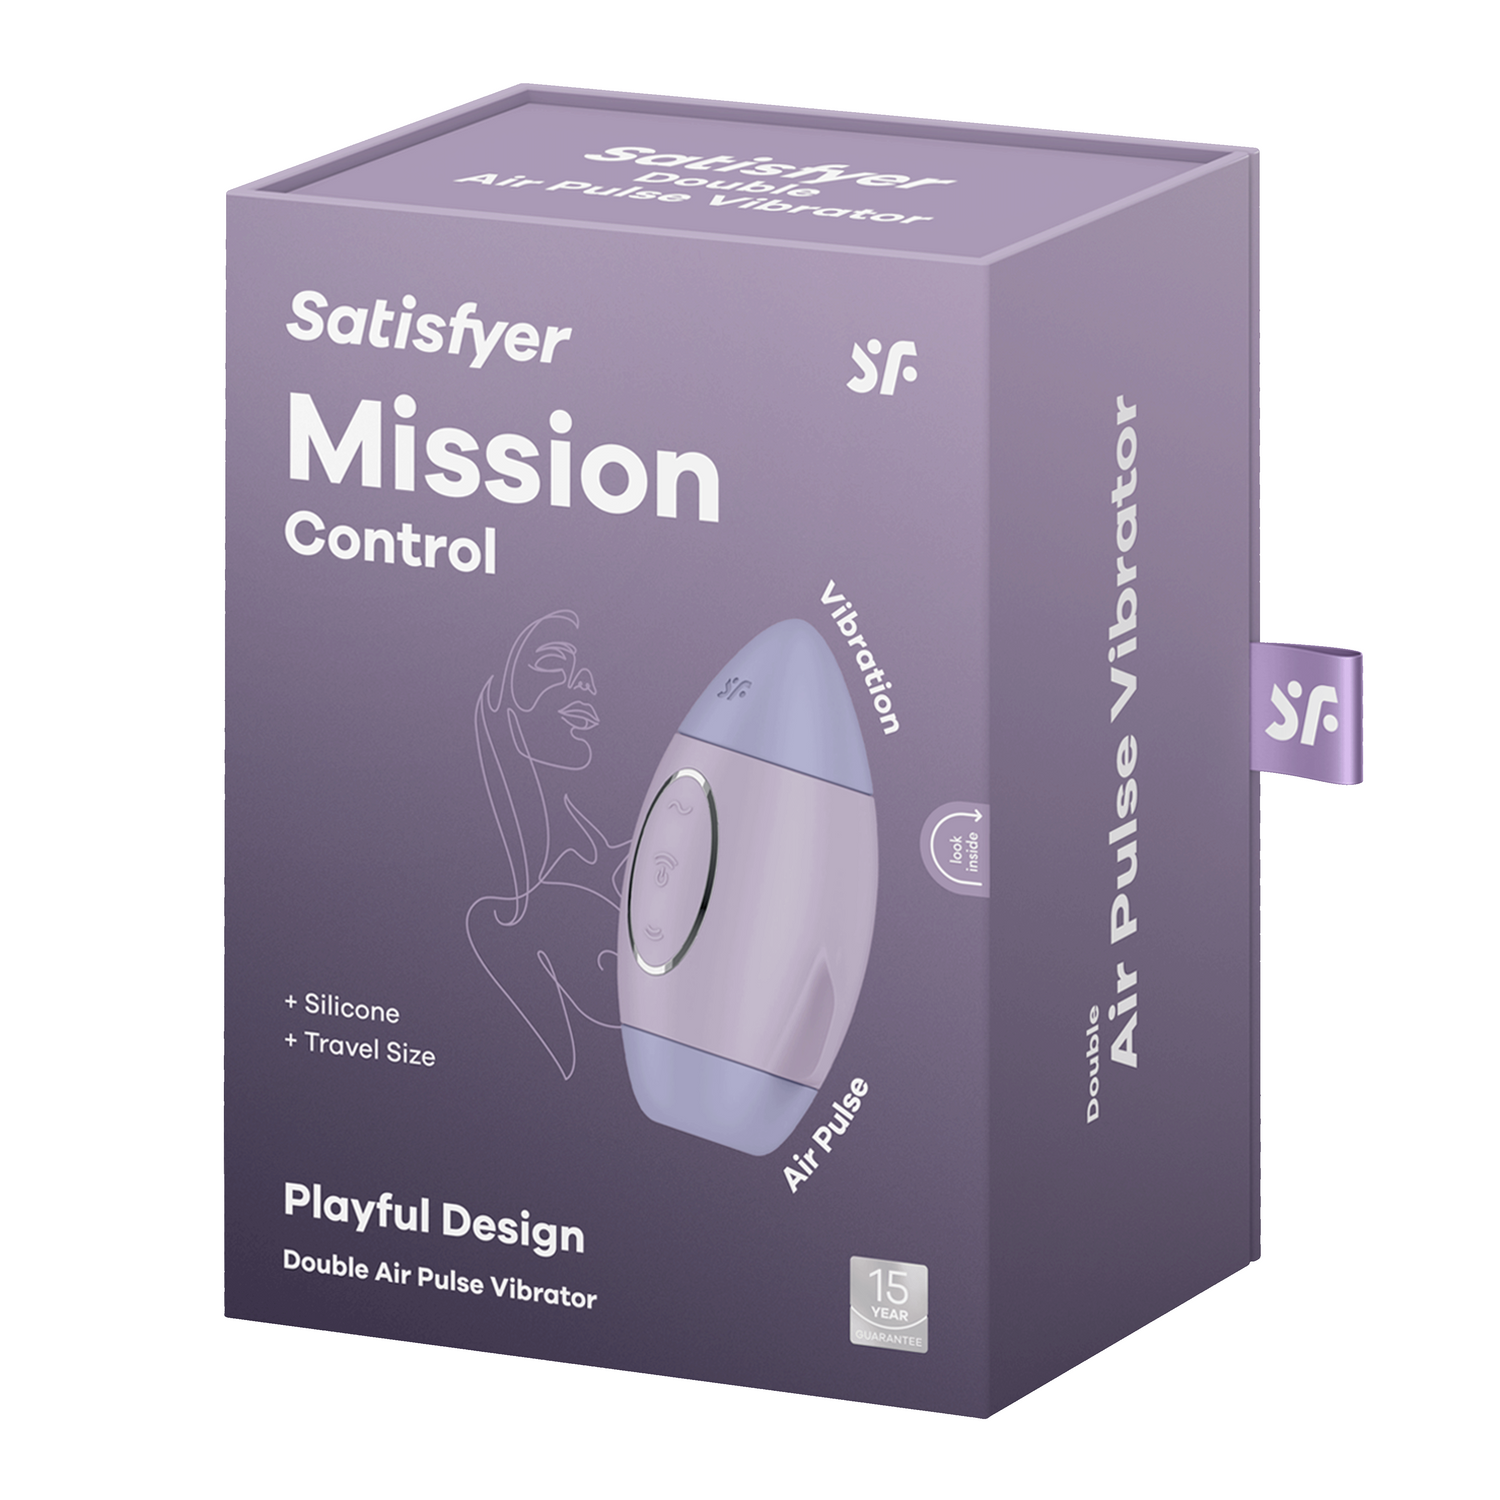 Satisfyer Mission Control Violet - Just for you desires